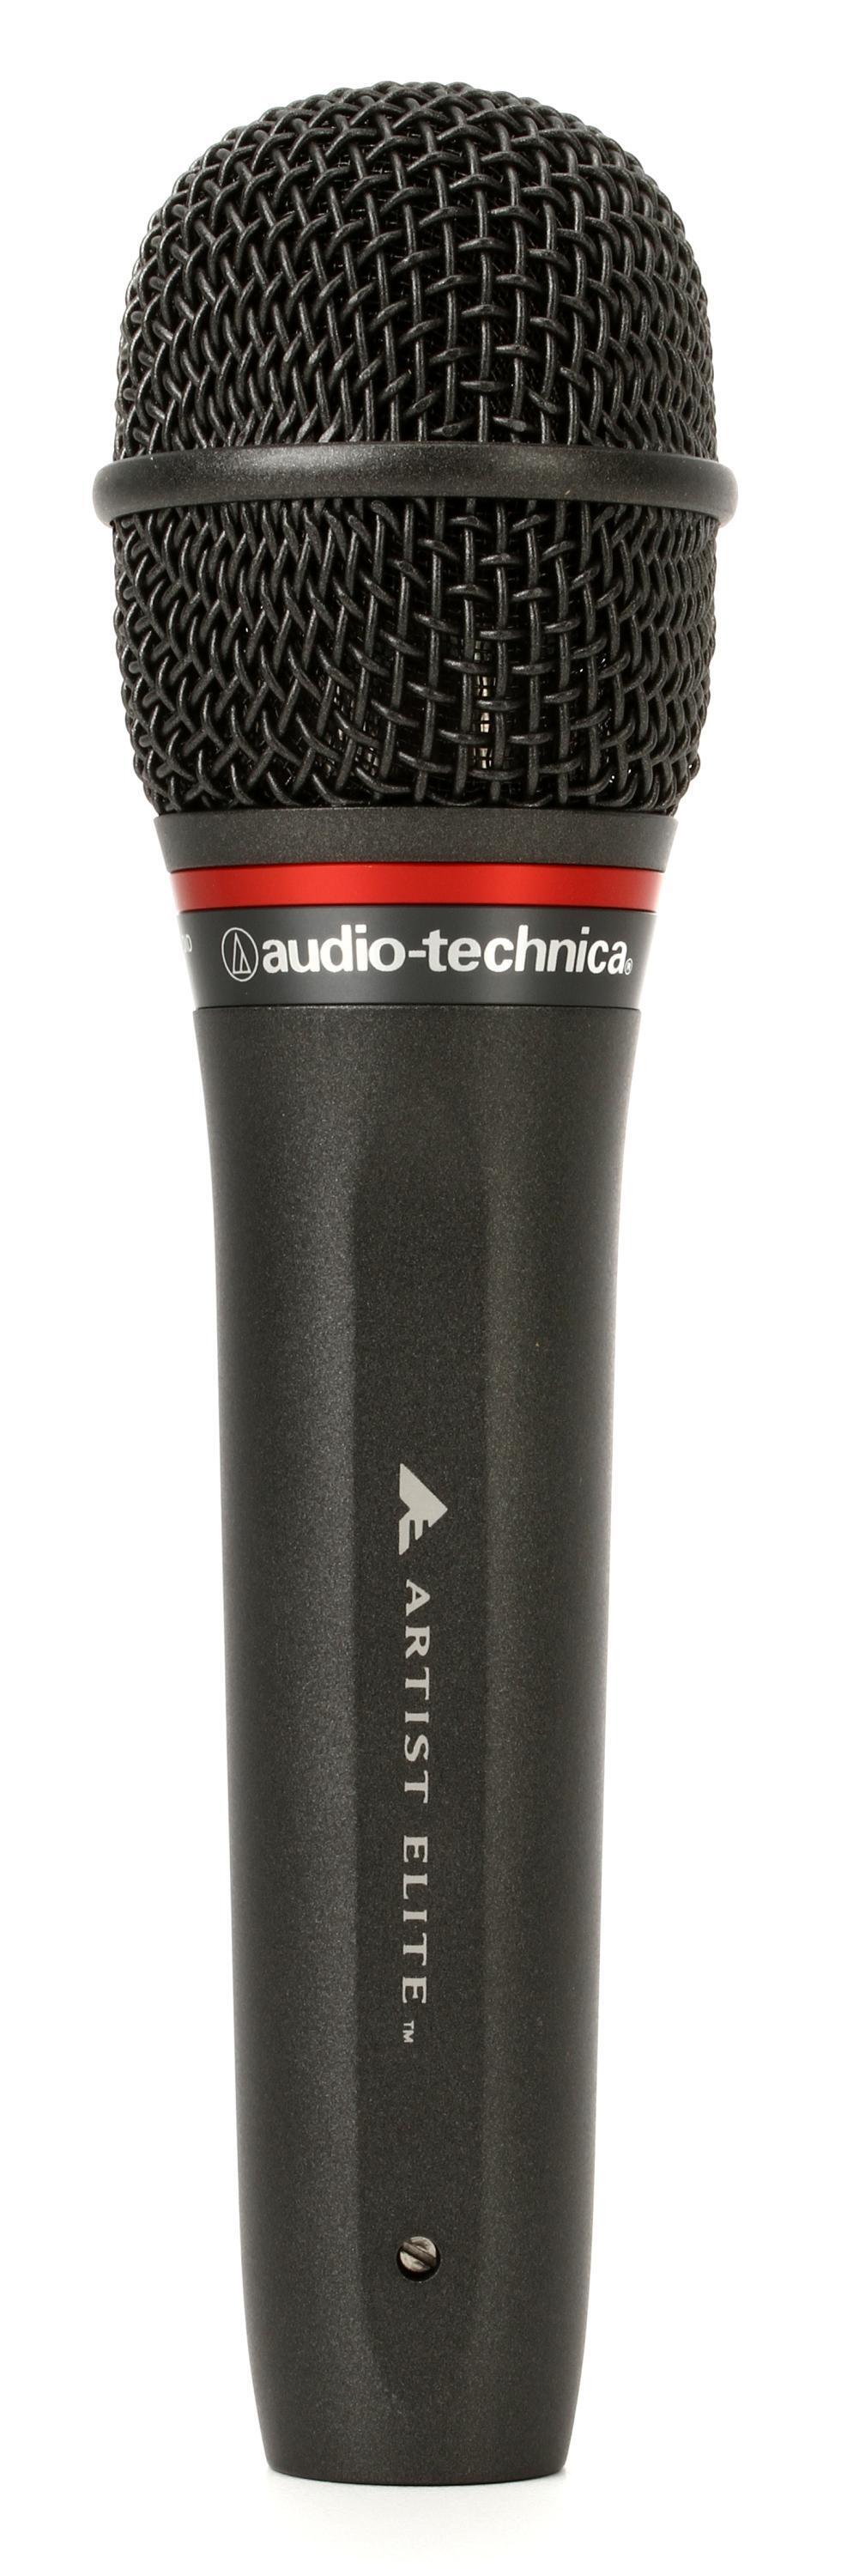 マイク audio-technica AE6100-